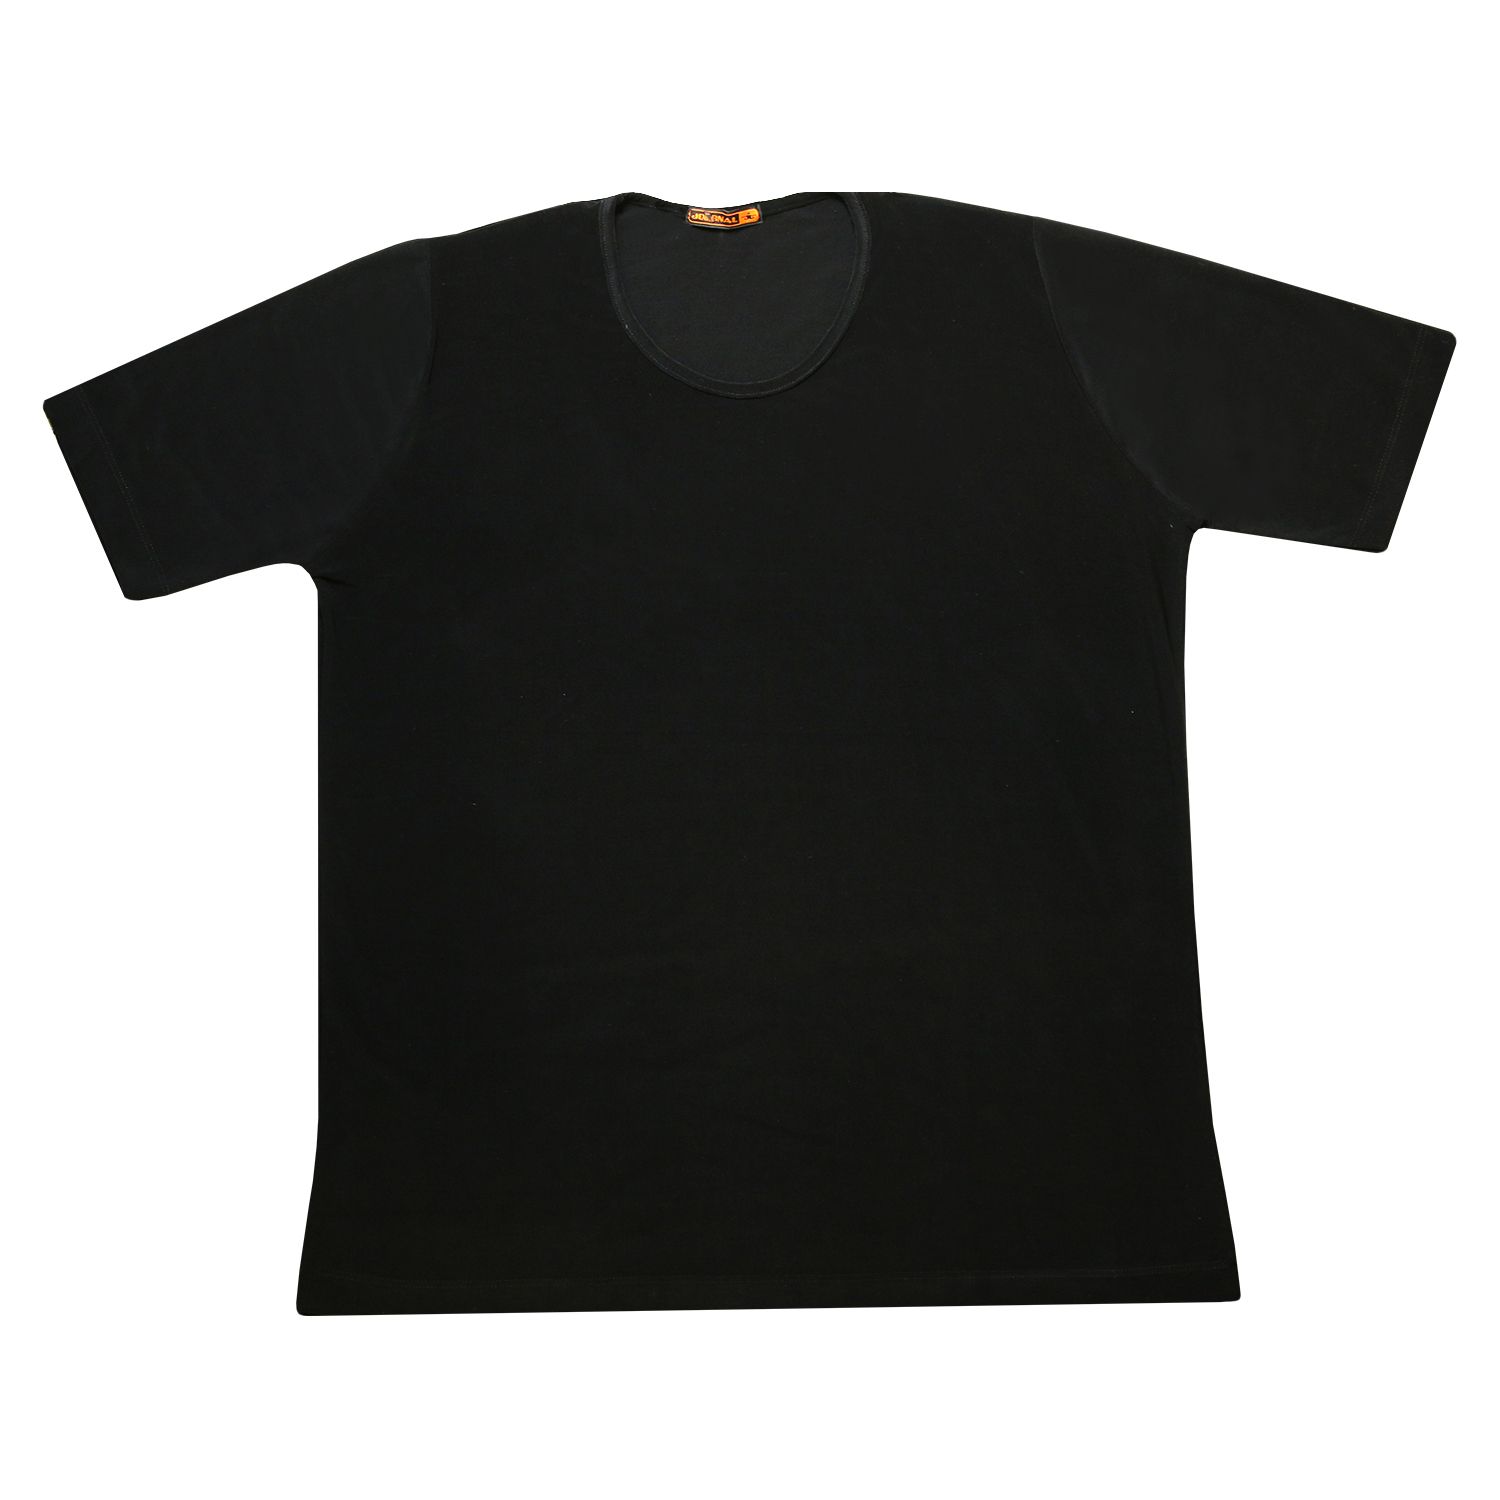 تی شرت زنانه کد 21703 رنگ مشکی -  - 1